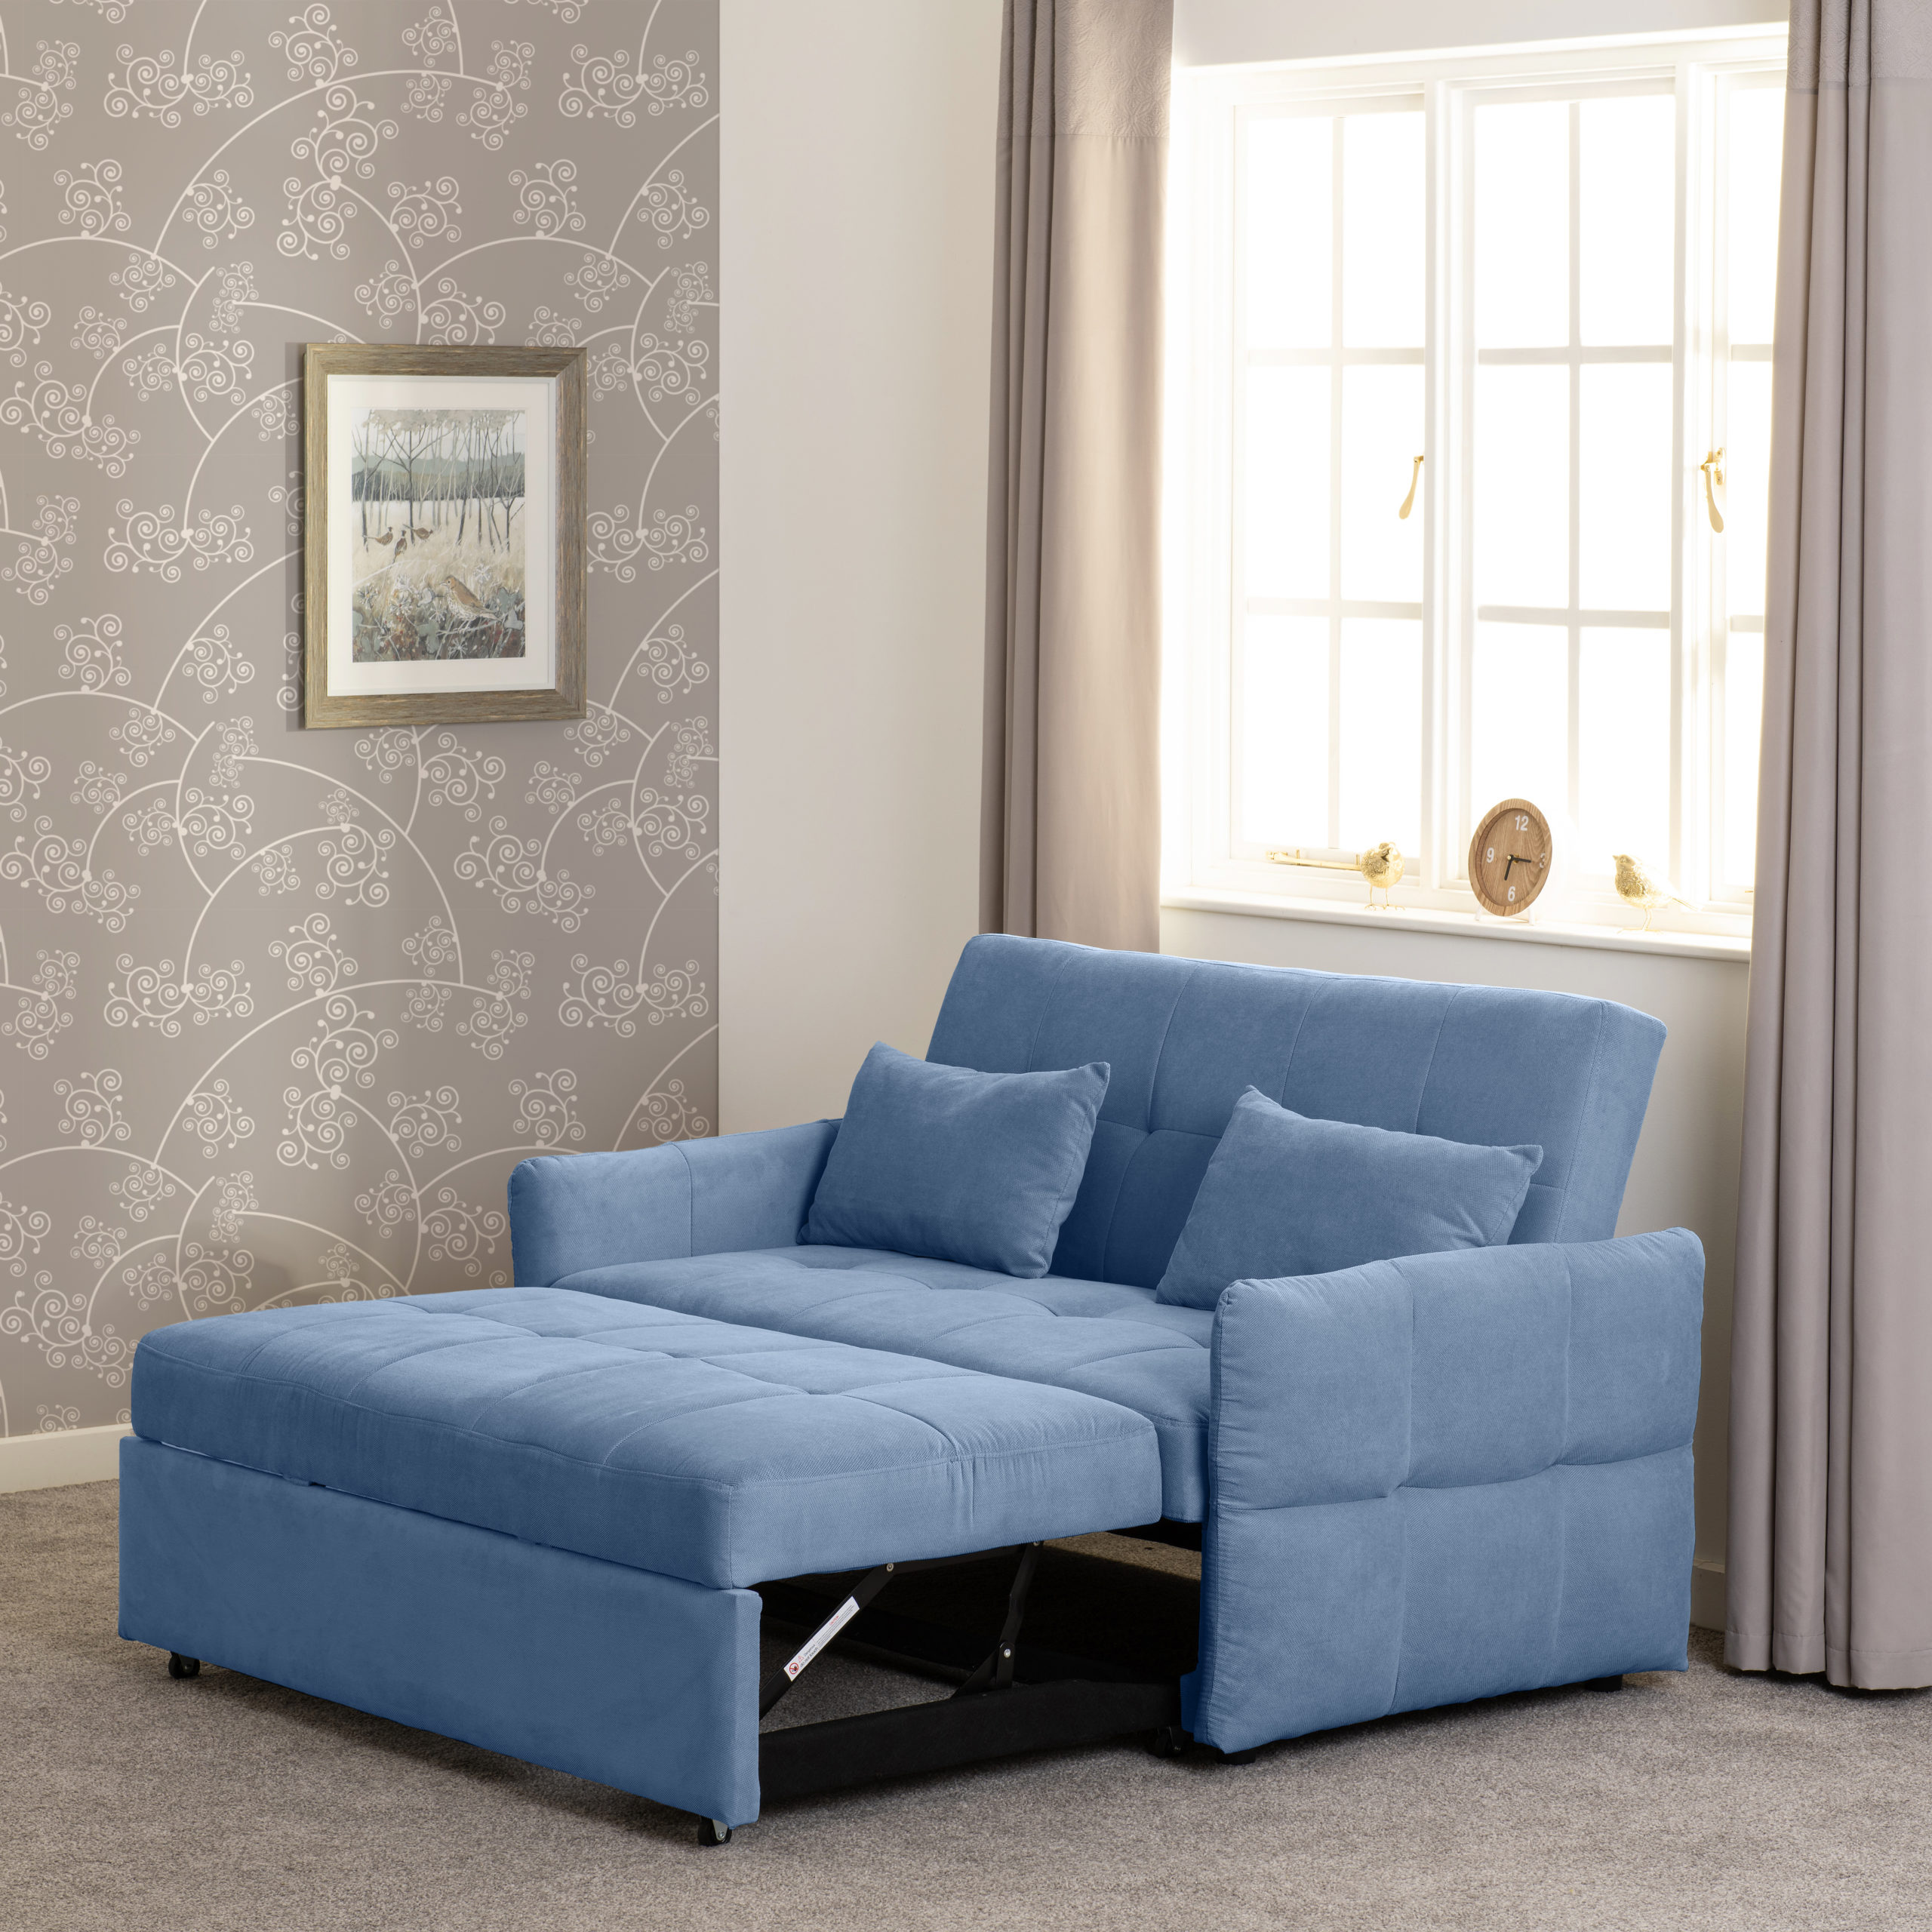 300-308-069 - Chelsea Sofa Bed - Blue Fabric - Seconique